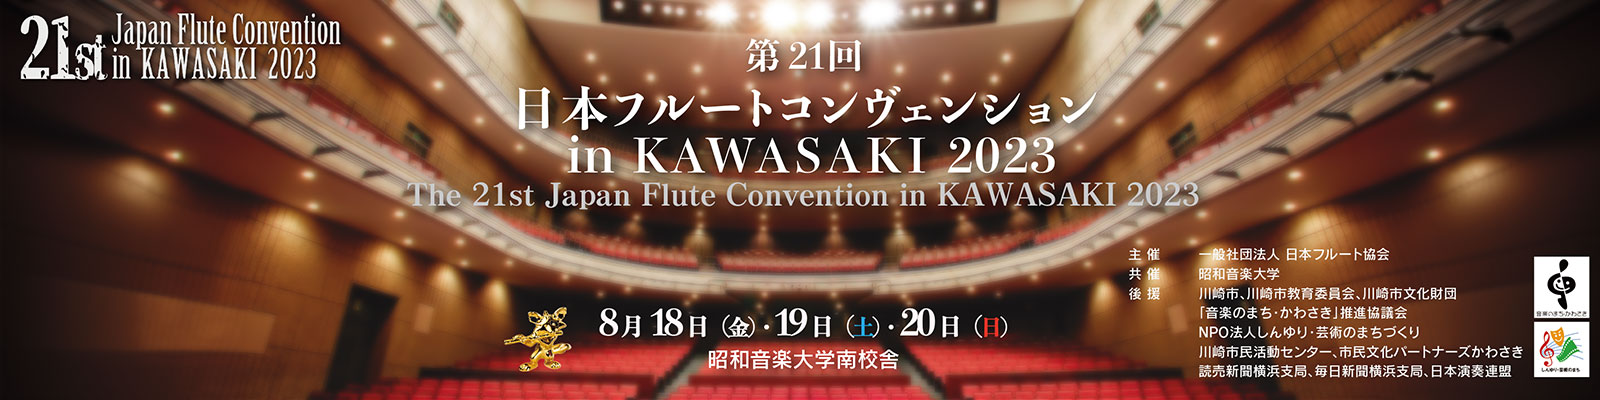 第21回 日本フルートコンヴェンション in KAWASAKI 2023